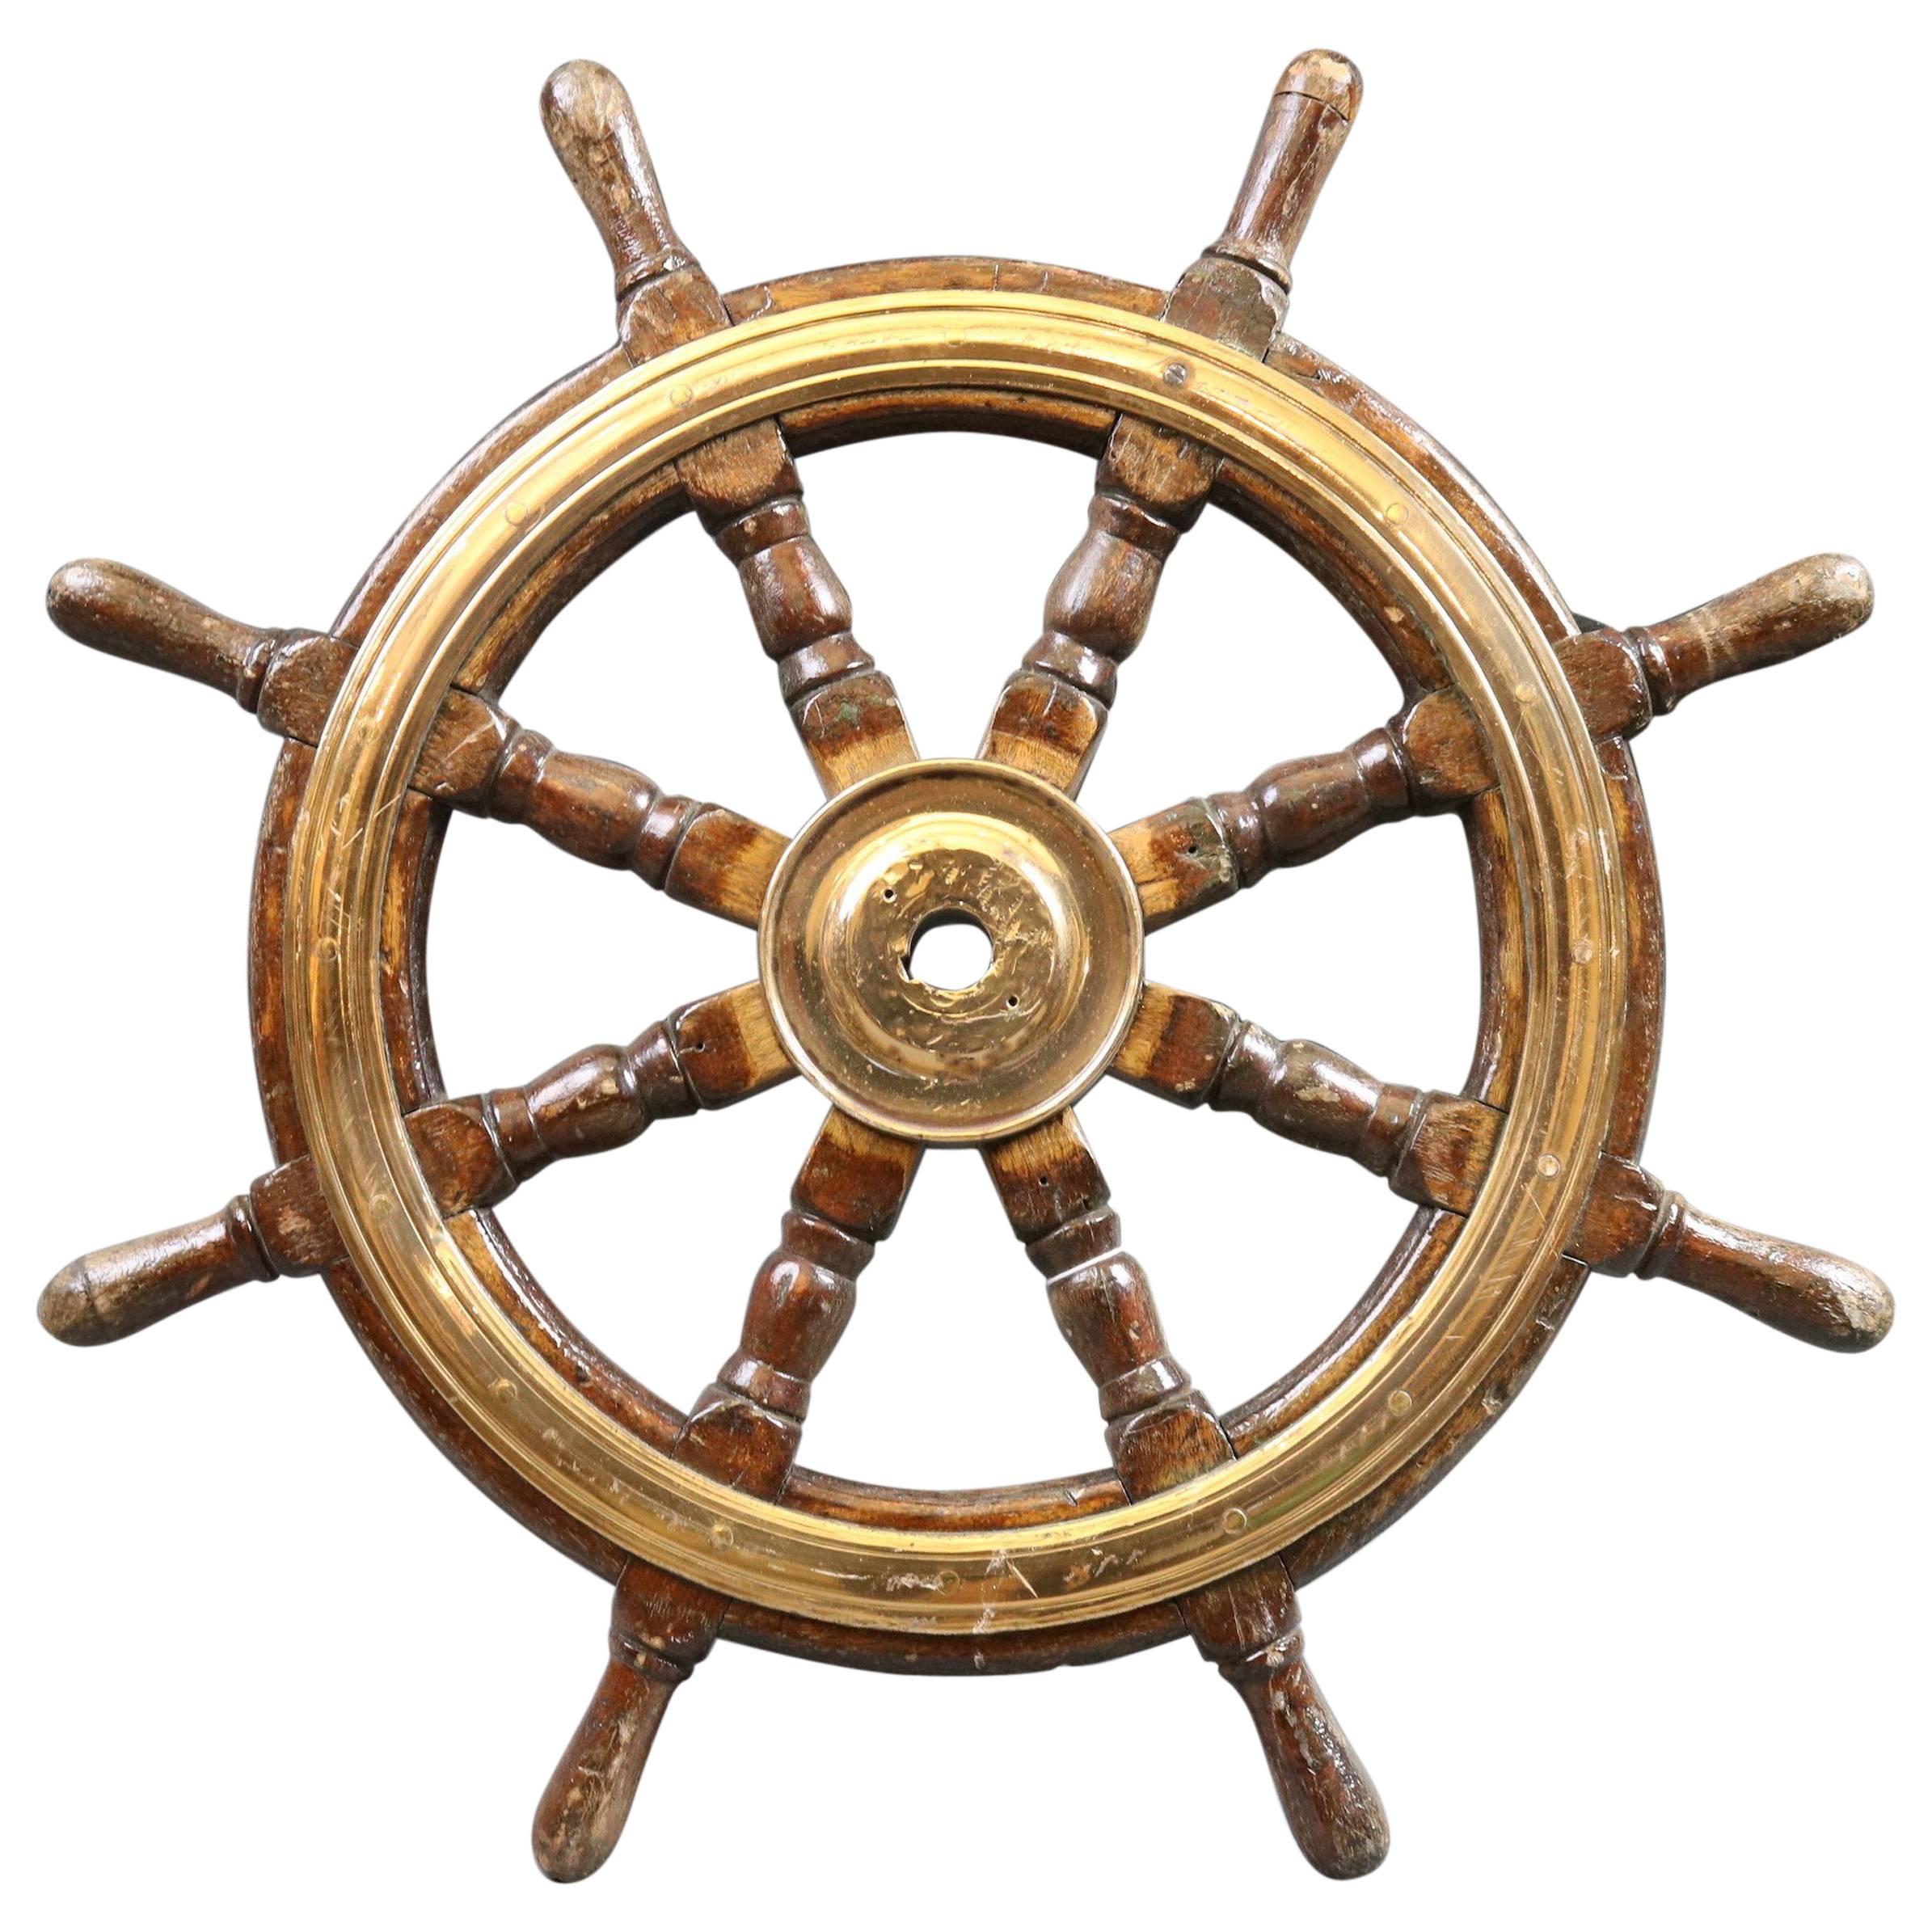 Antique Ship's Wheel